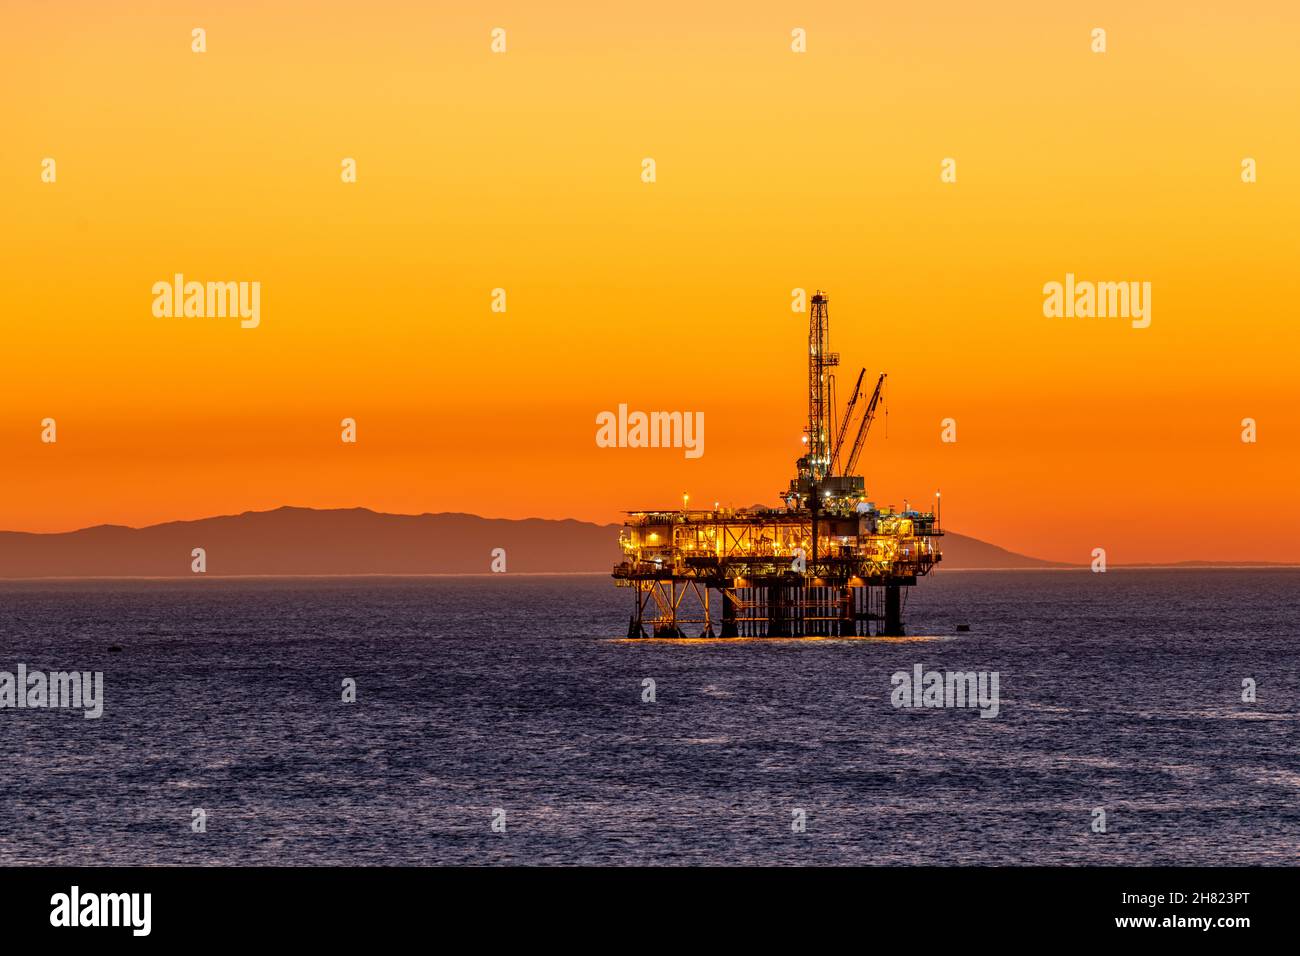 Offshore-Ölplattform vor der Küste Kaliforniens gegen einen launischen, orangen Himmel, wenn die Sonne hinter der Bohrinsel untergeht. Stockfoto